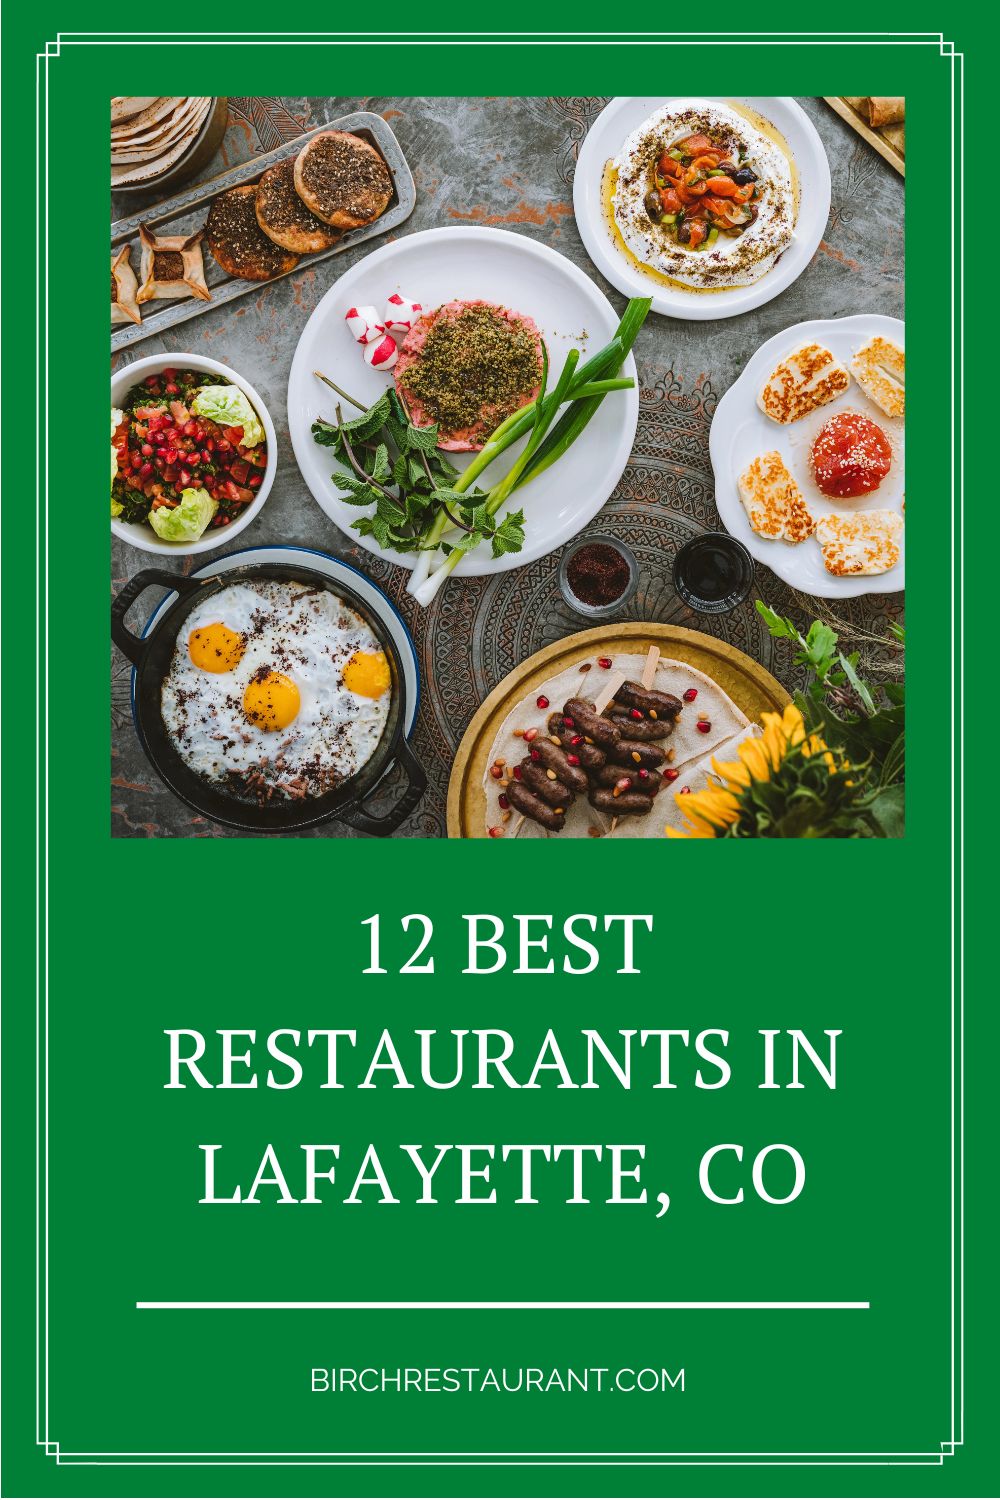 Best Restaurants in Lafayette